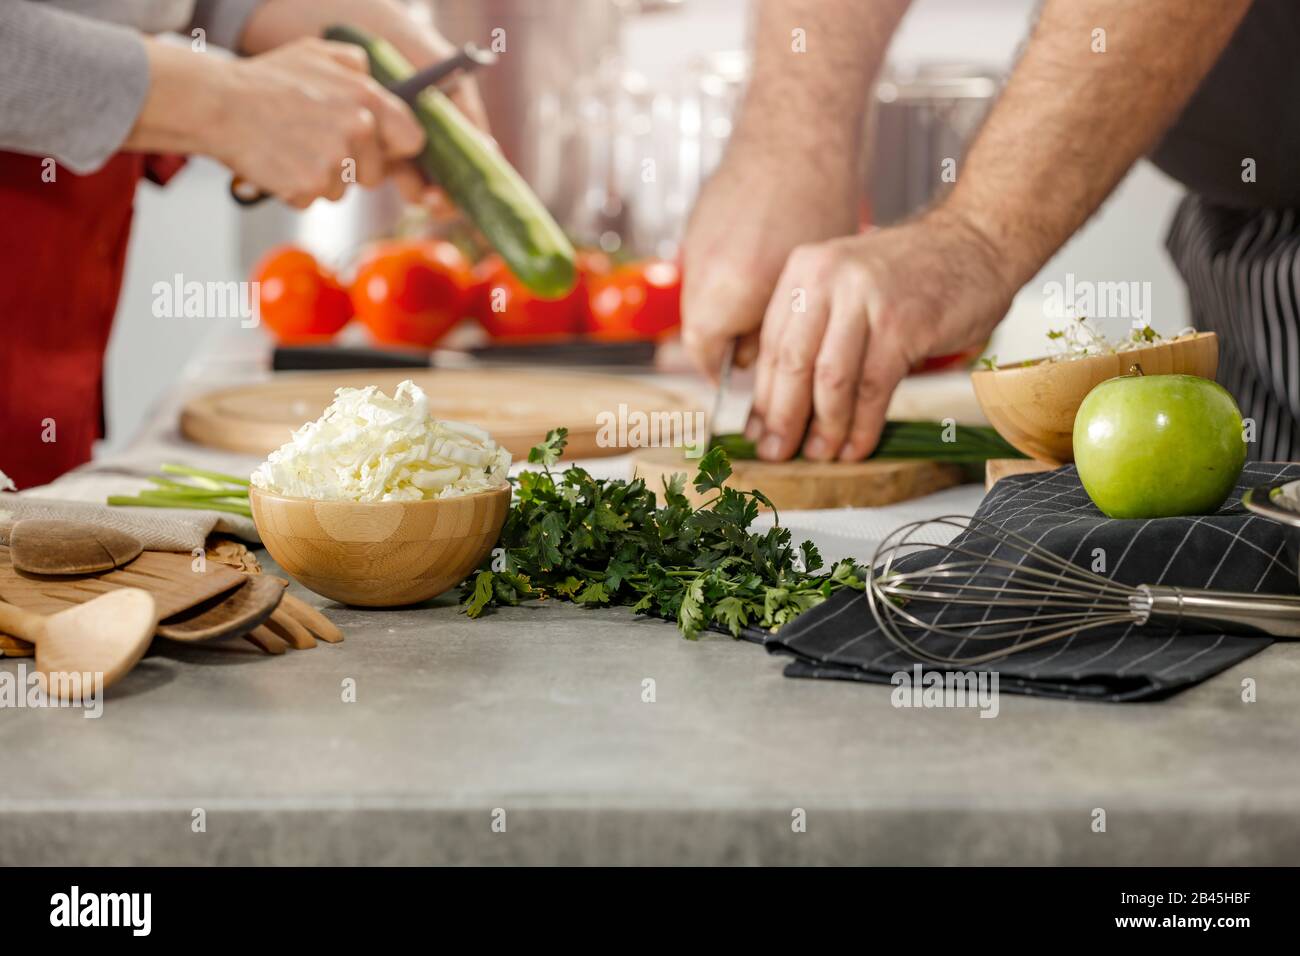 Cucina, cottura e preparazione di pasti e piatti in cucina. Tavolo con utensili da cucina e attrezzature e prodotti alimentari. Foto Stock